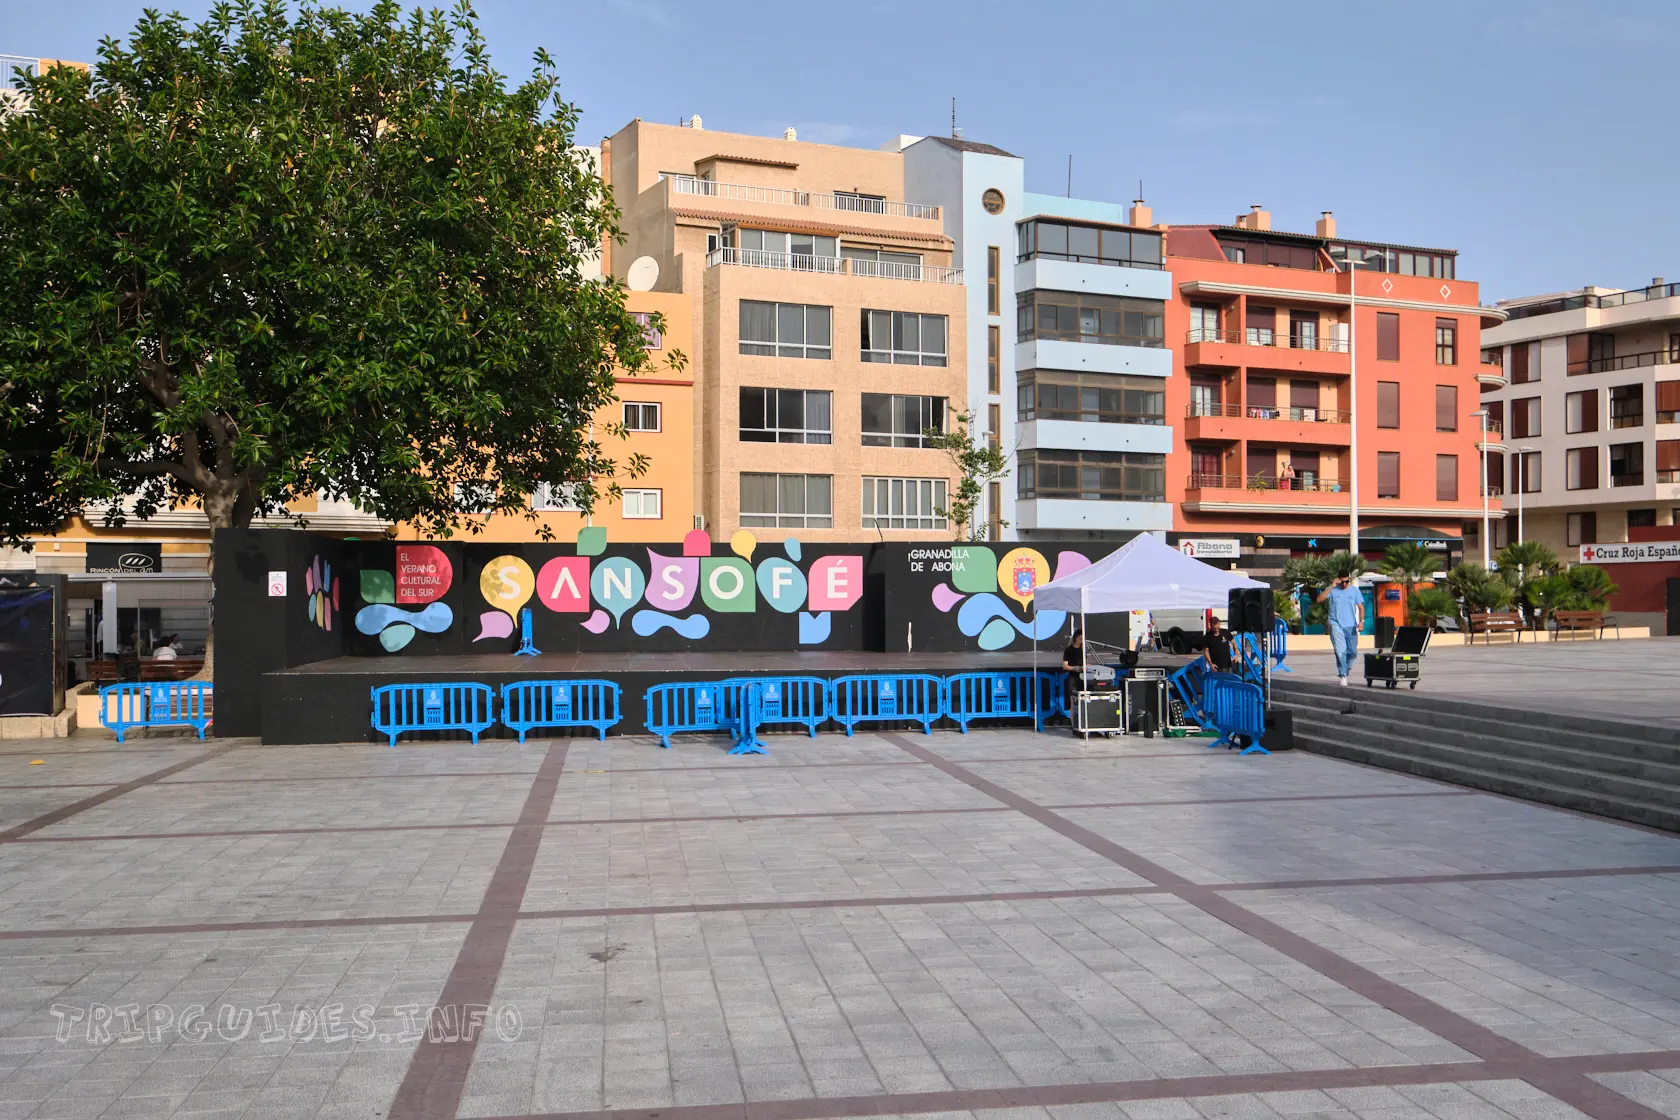 San Sofe - фольклорный фестиваль на Главной площади в Эль-Медано